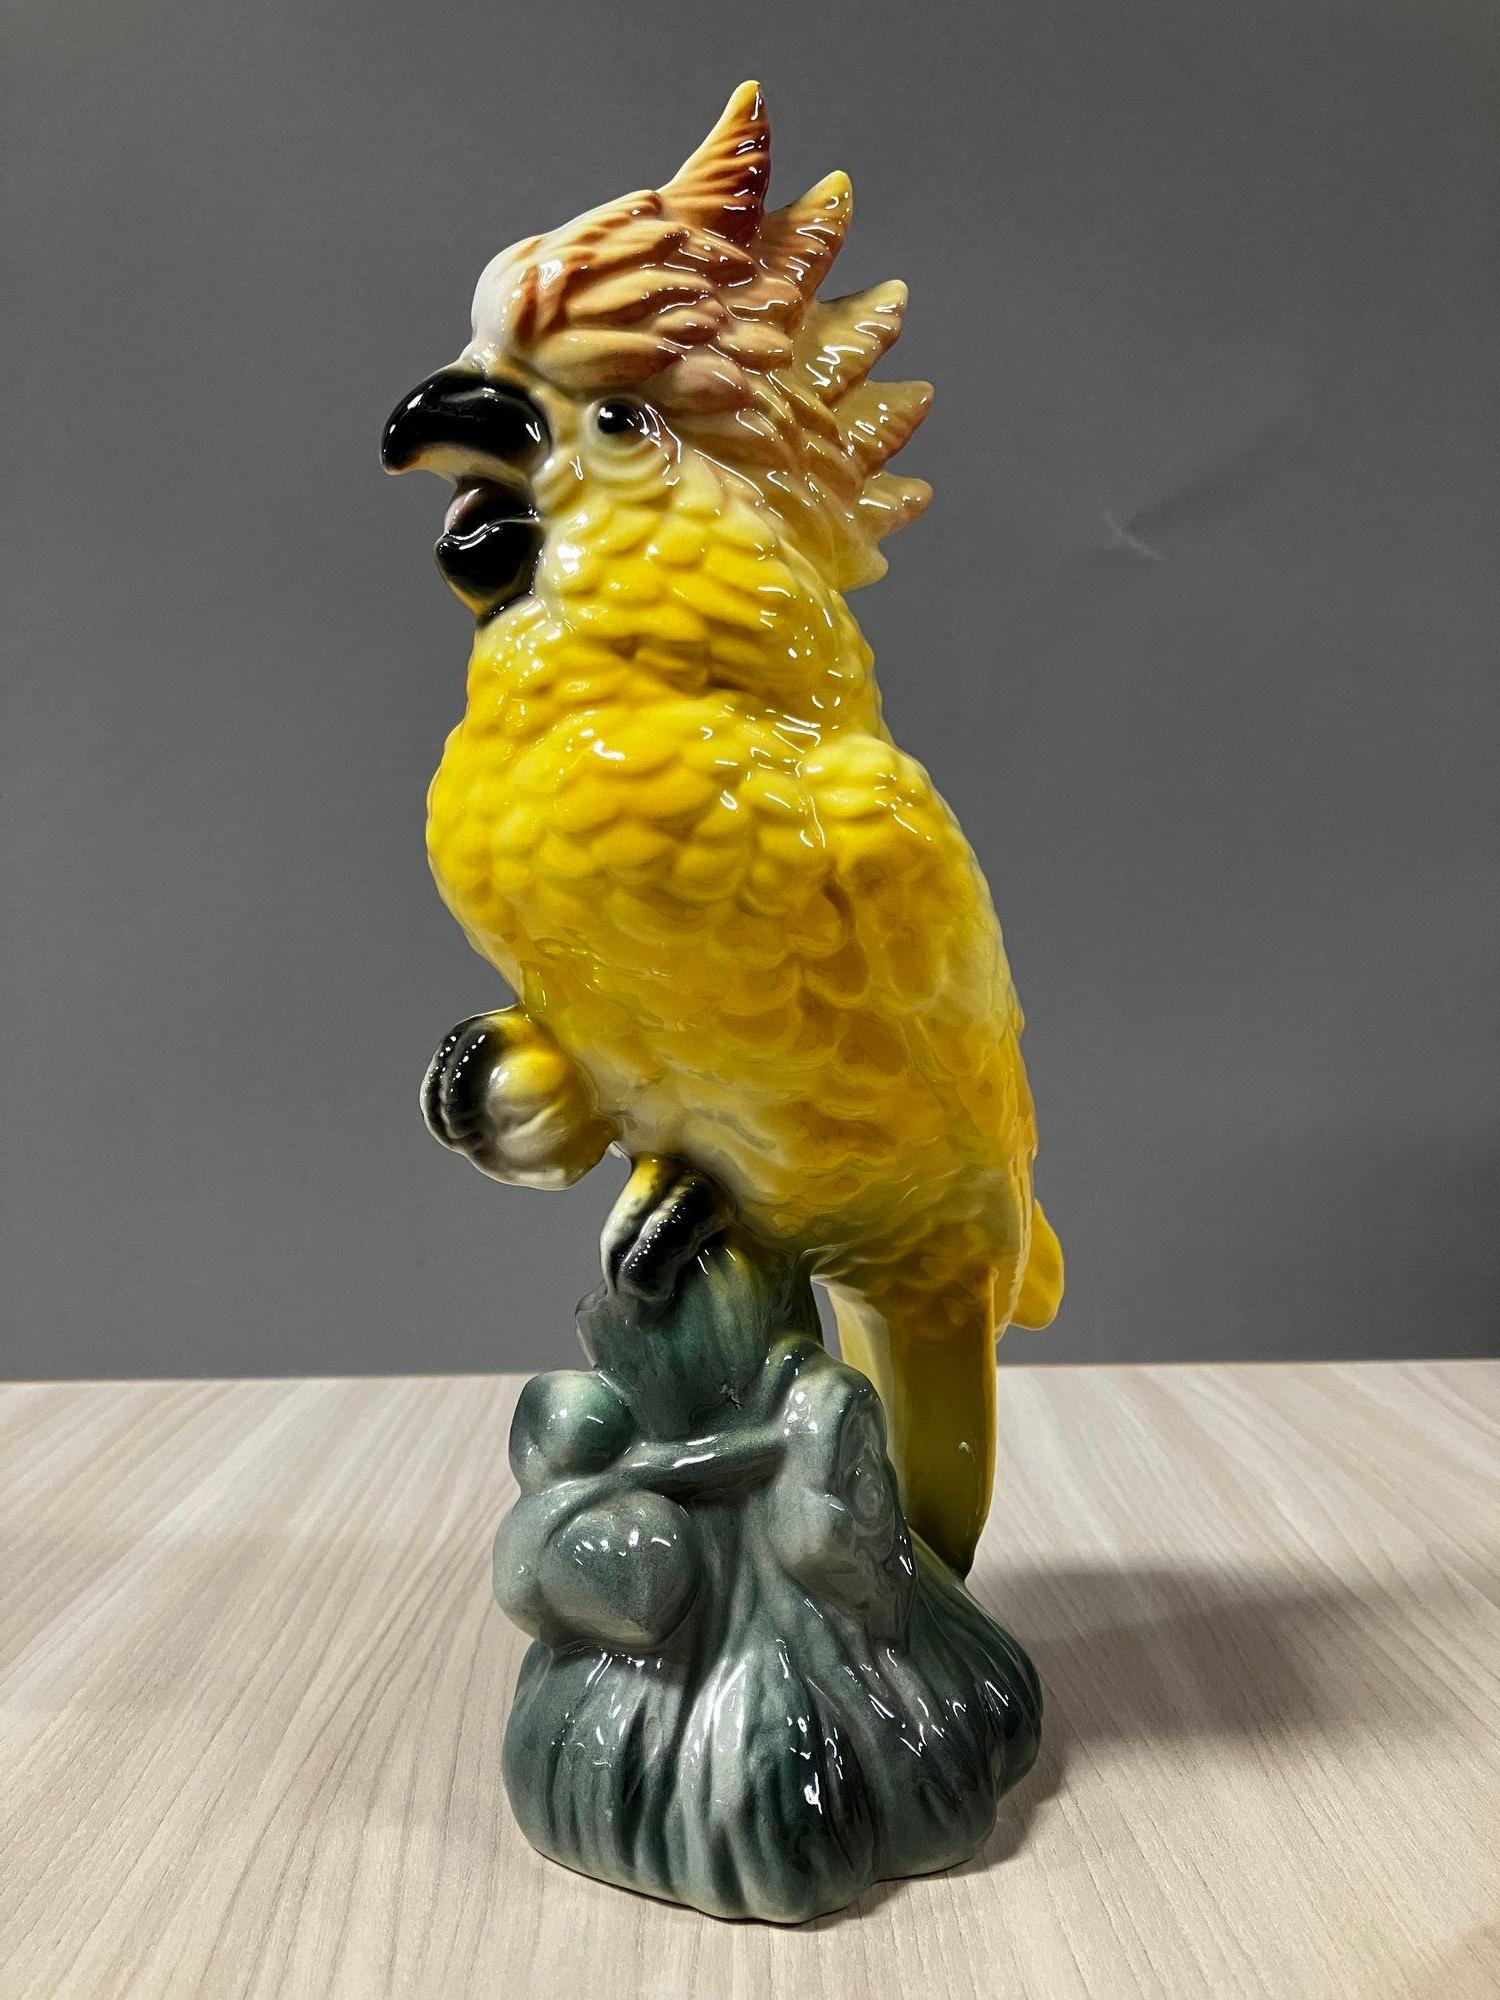 Frühe Mitte des Jahrhunderts Keramik Tropische gelbe Farbe Kakadu auf einem Branch von Fame California Potter William Maddux.

Ein gutes Beispiel für die Hawaii-Manie, die die USA nach dem Zweiten Weltkrieg erfasste, als viele amerikanische Soldaten